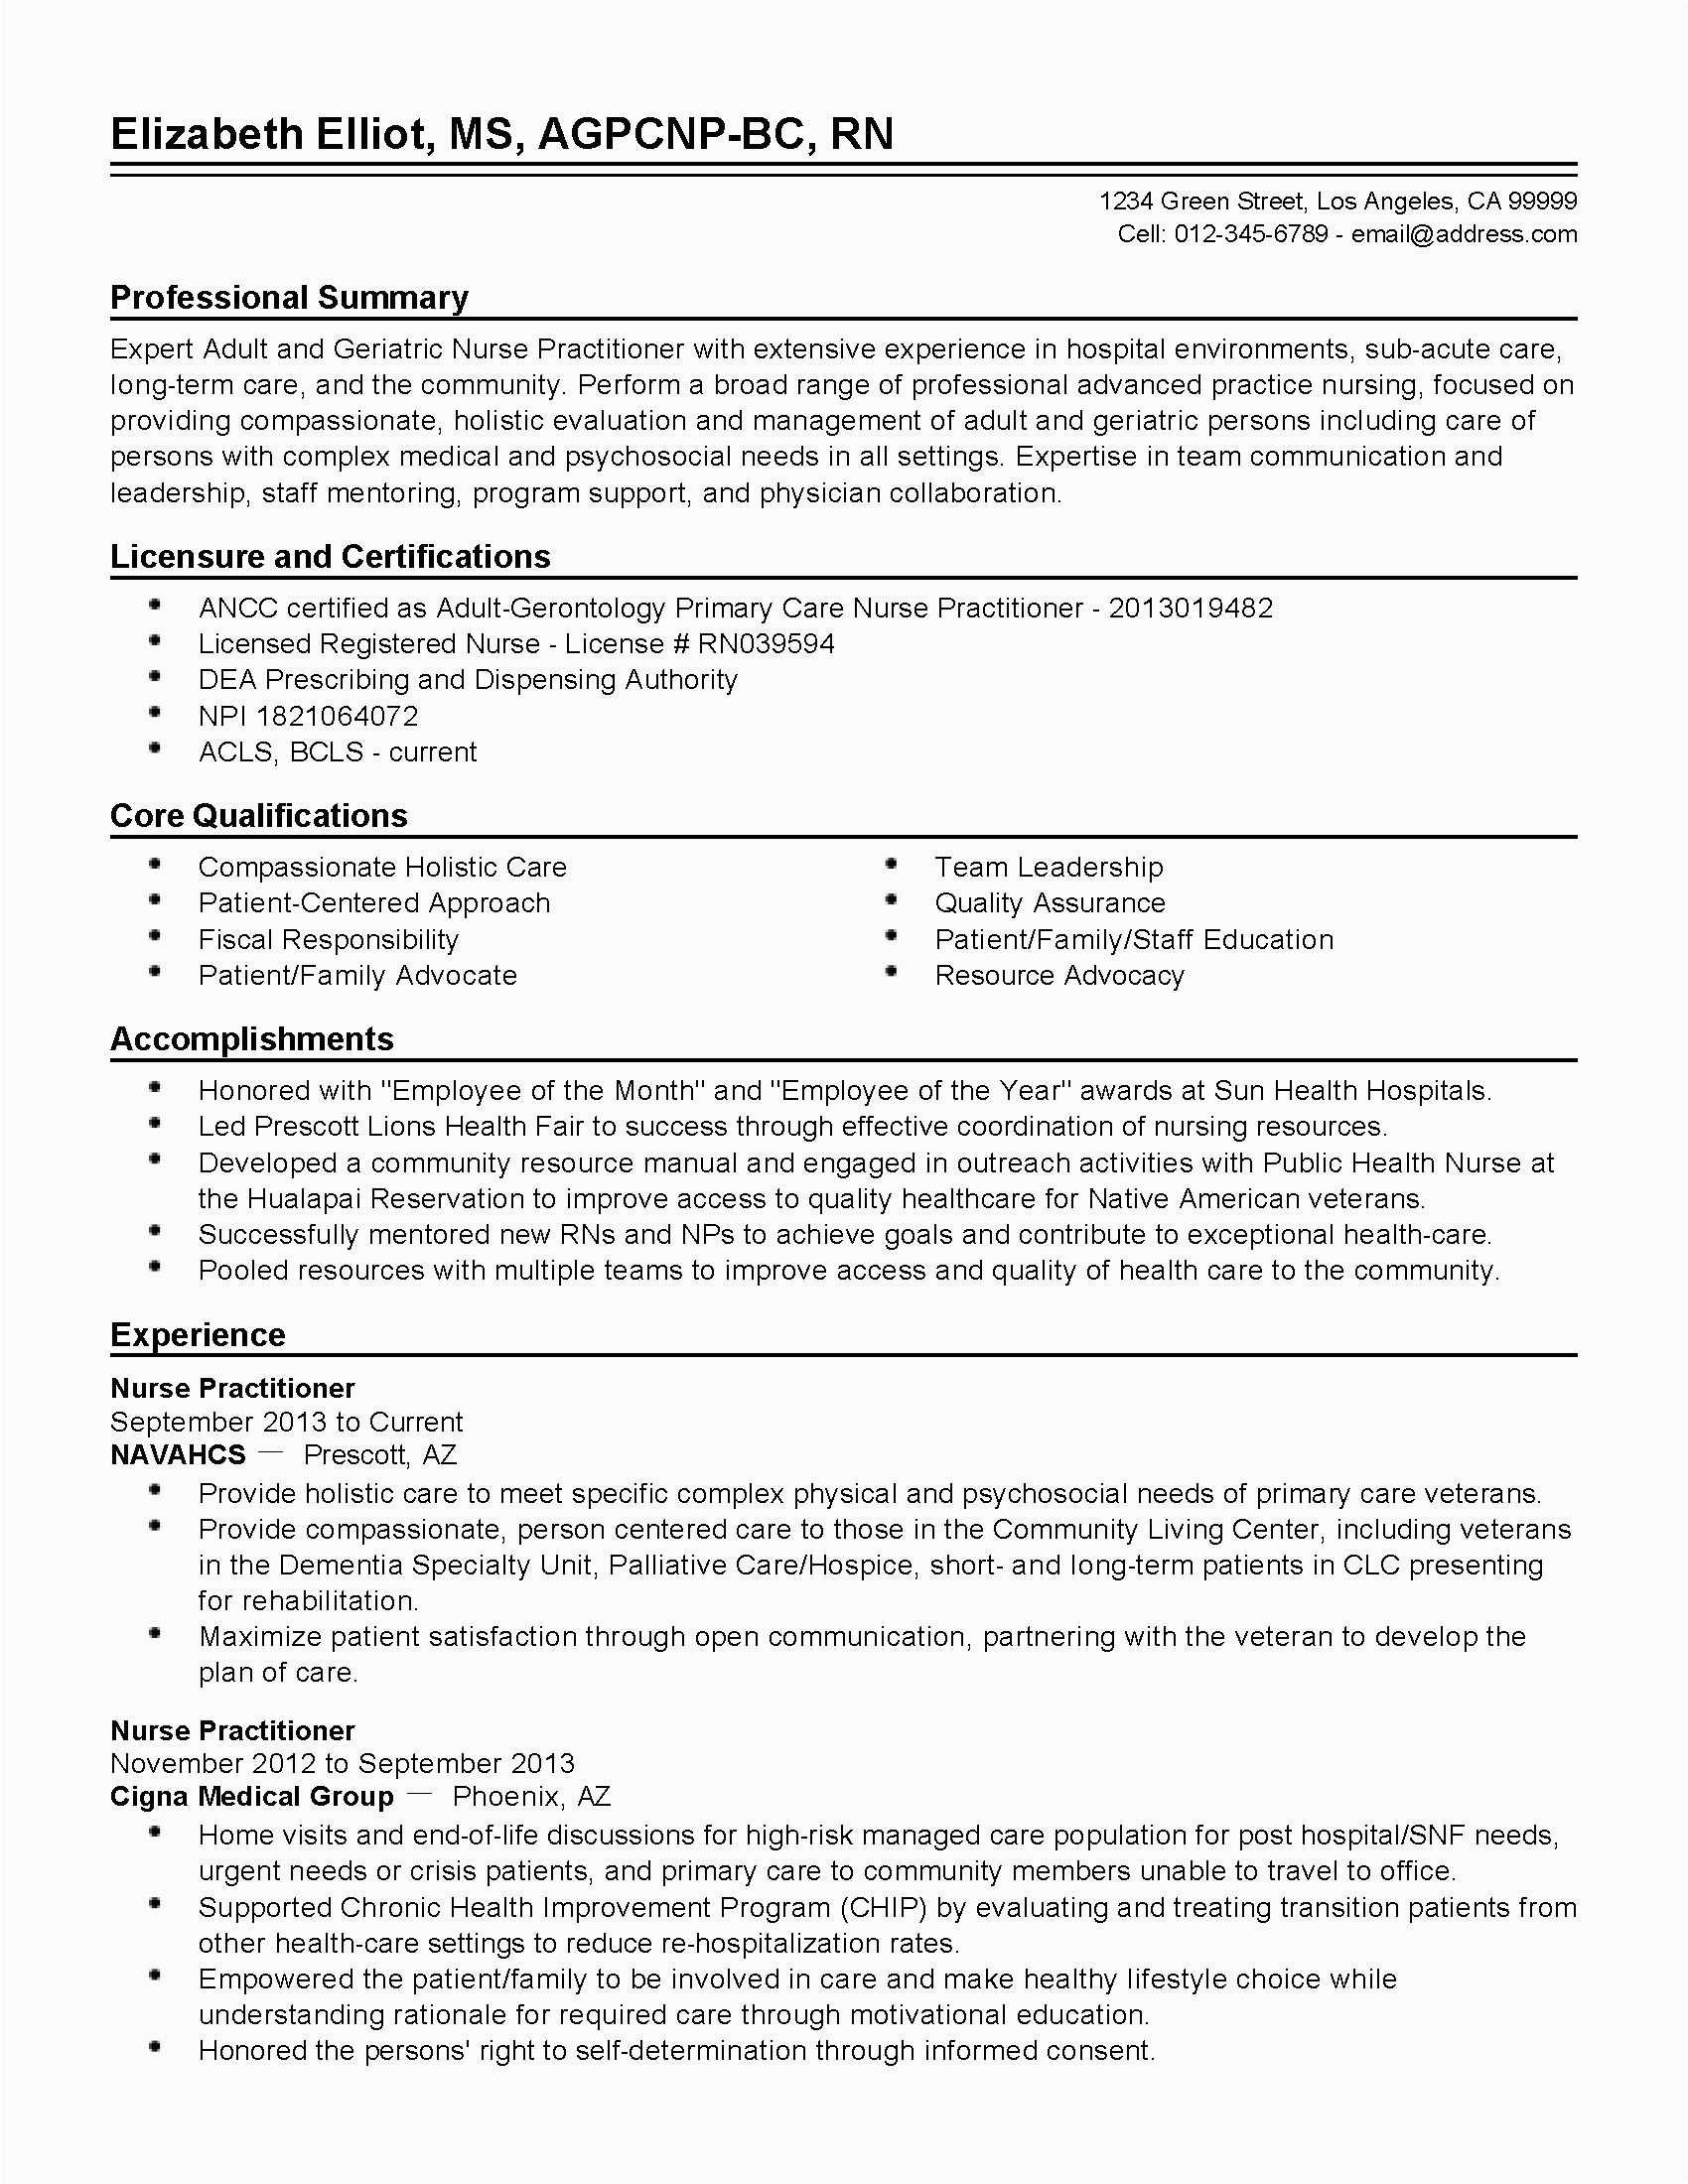 Sample Resume for A Graduate Nurse Nurse Practitioner Resume New Graduate